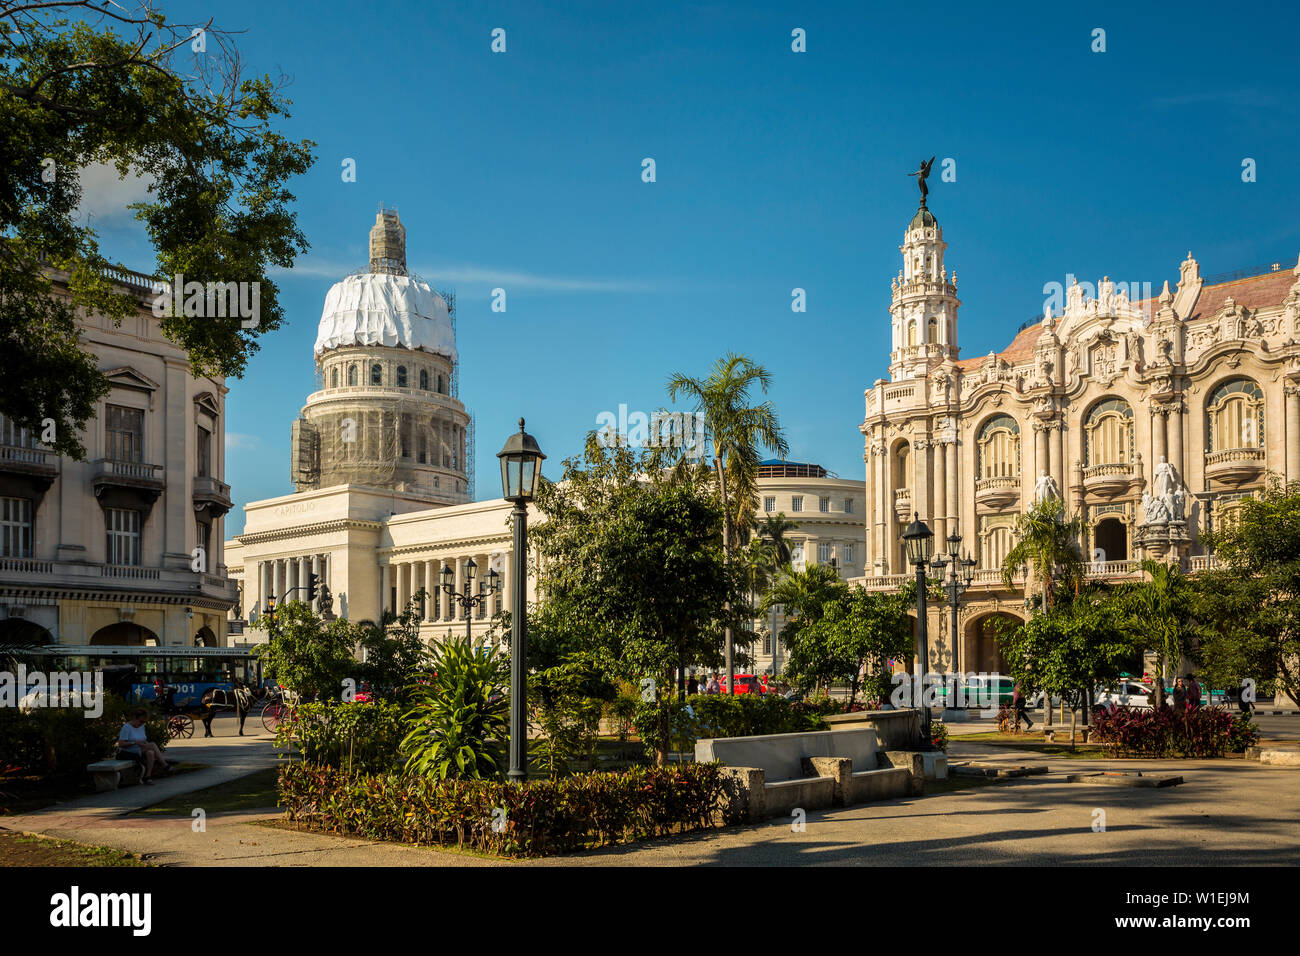 The Gran Teatro de La Habana, El Capitolio and Parque Central in Havana, Cuba, West Indies, Caribbean, Central America Stock Photo